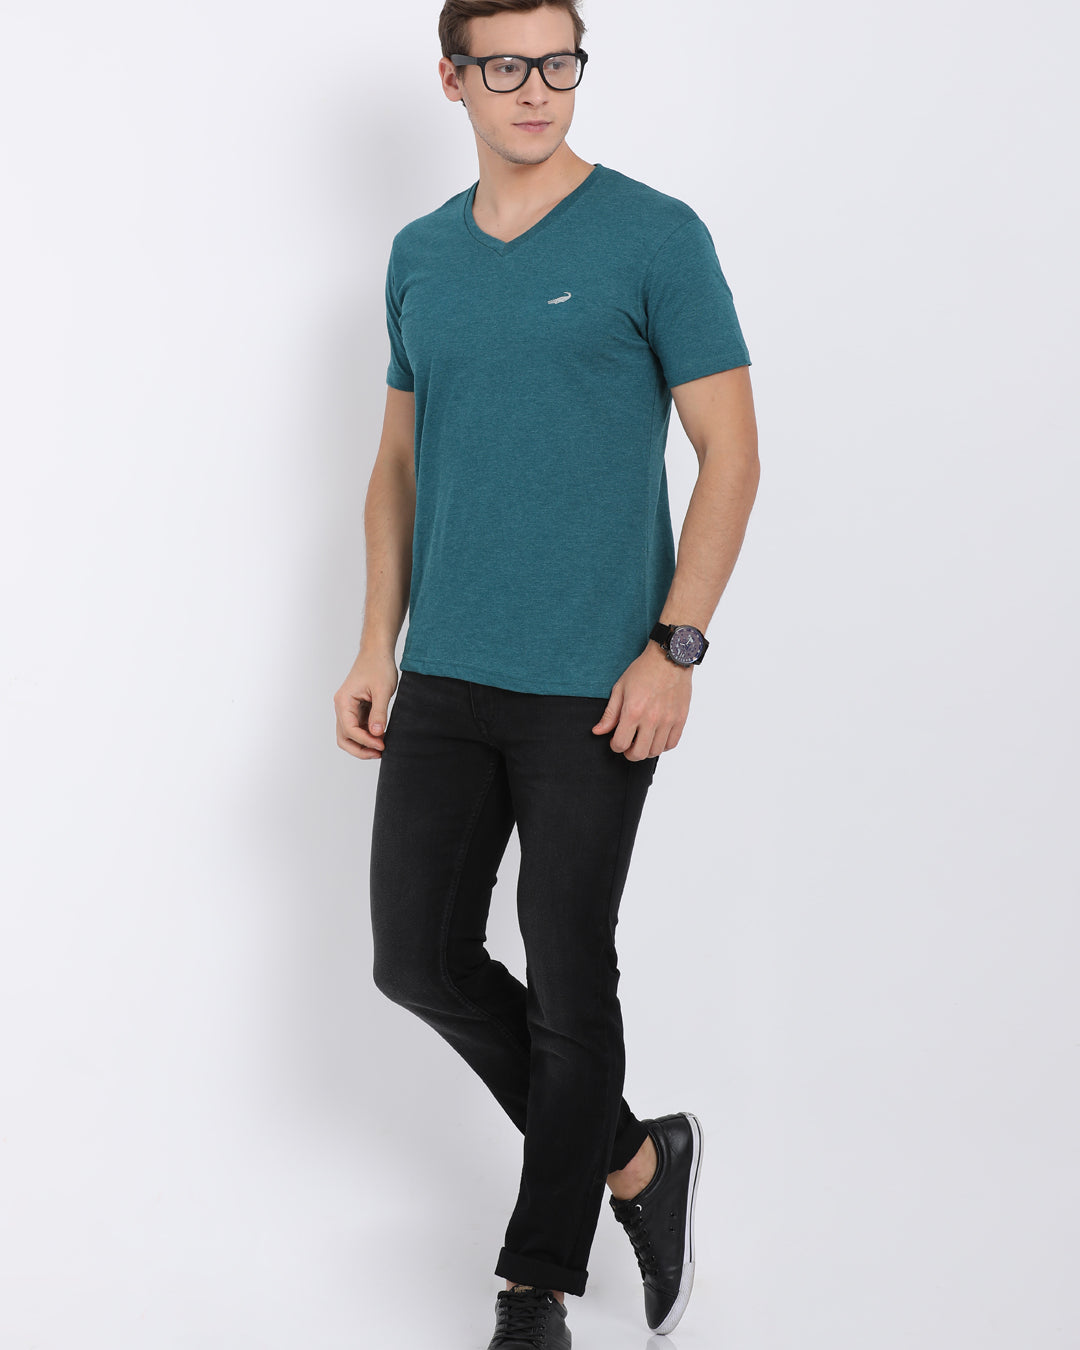 Men's Solid V Neck Half Sleeve Cotton T-Shirt - GREEN MELANGE